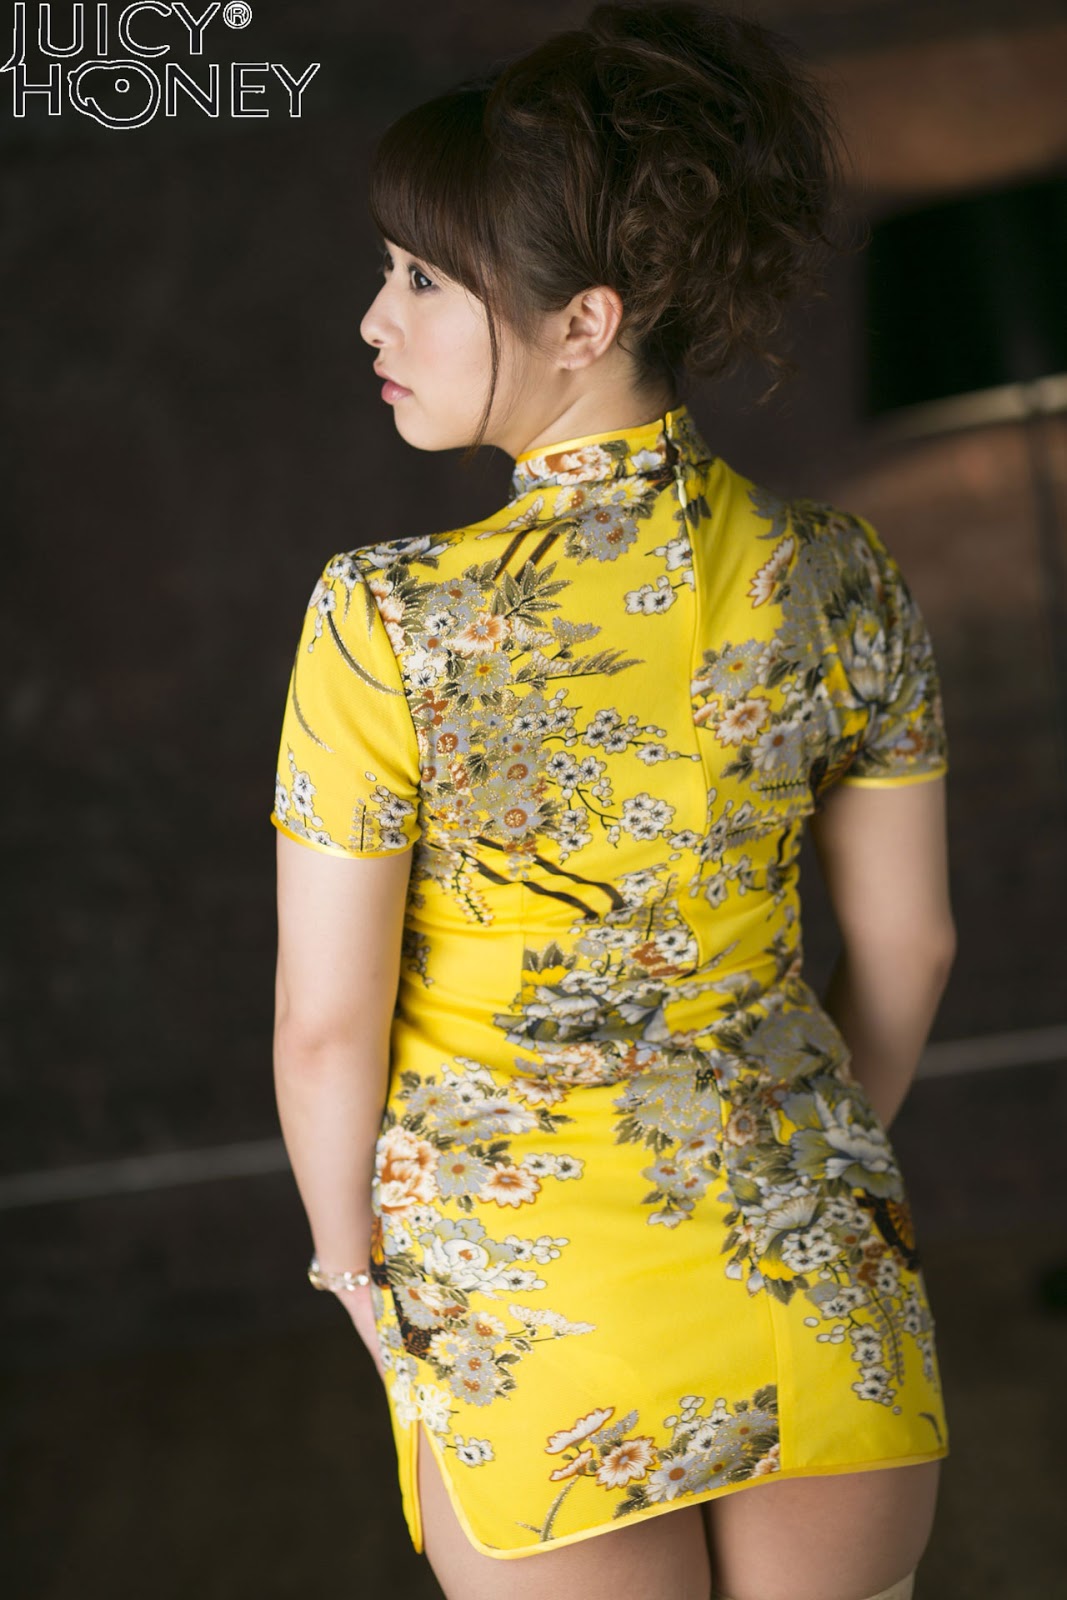 [x City] Marina Shiraishi Juicy Honey 147 Tabakus Gallery With